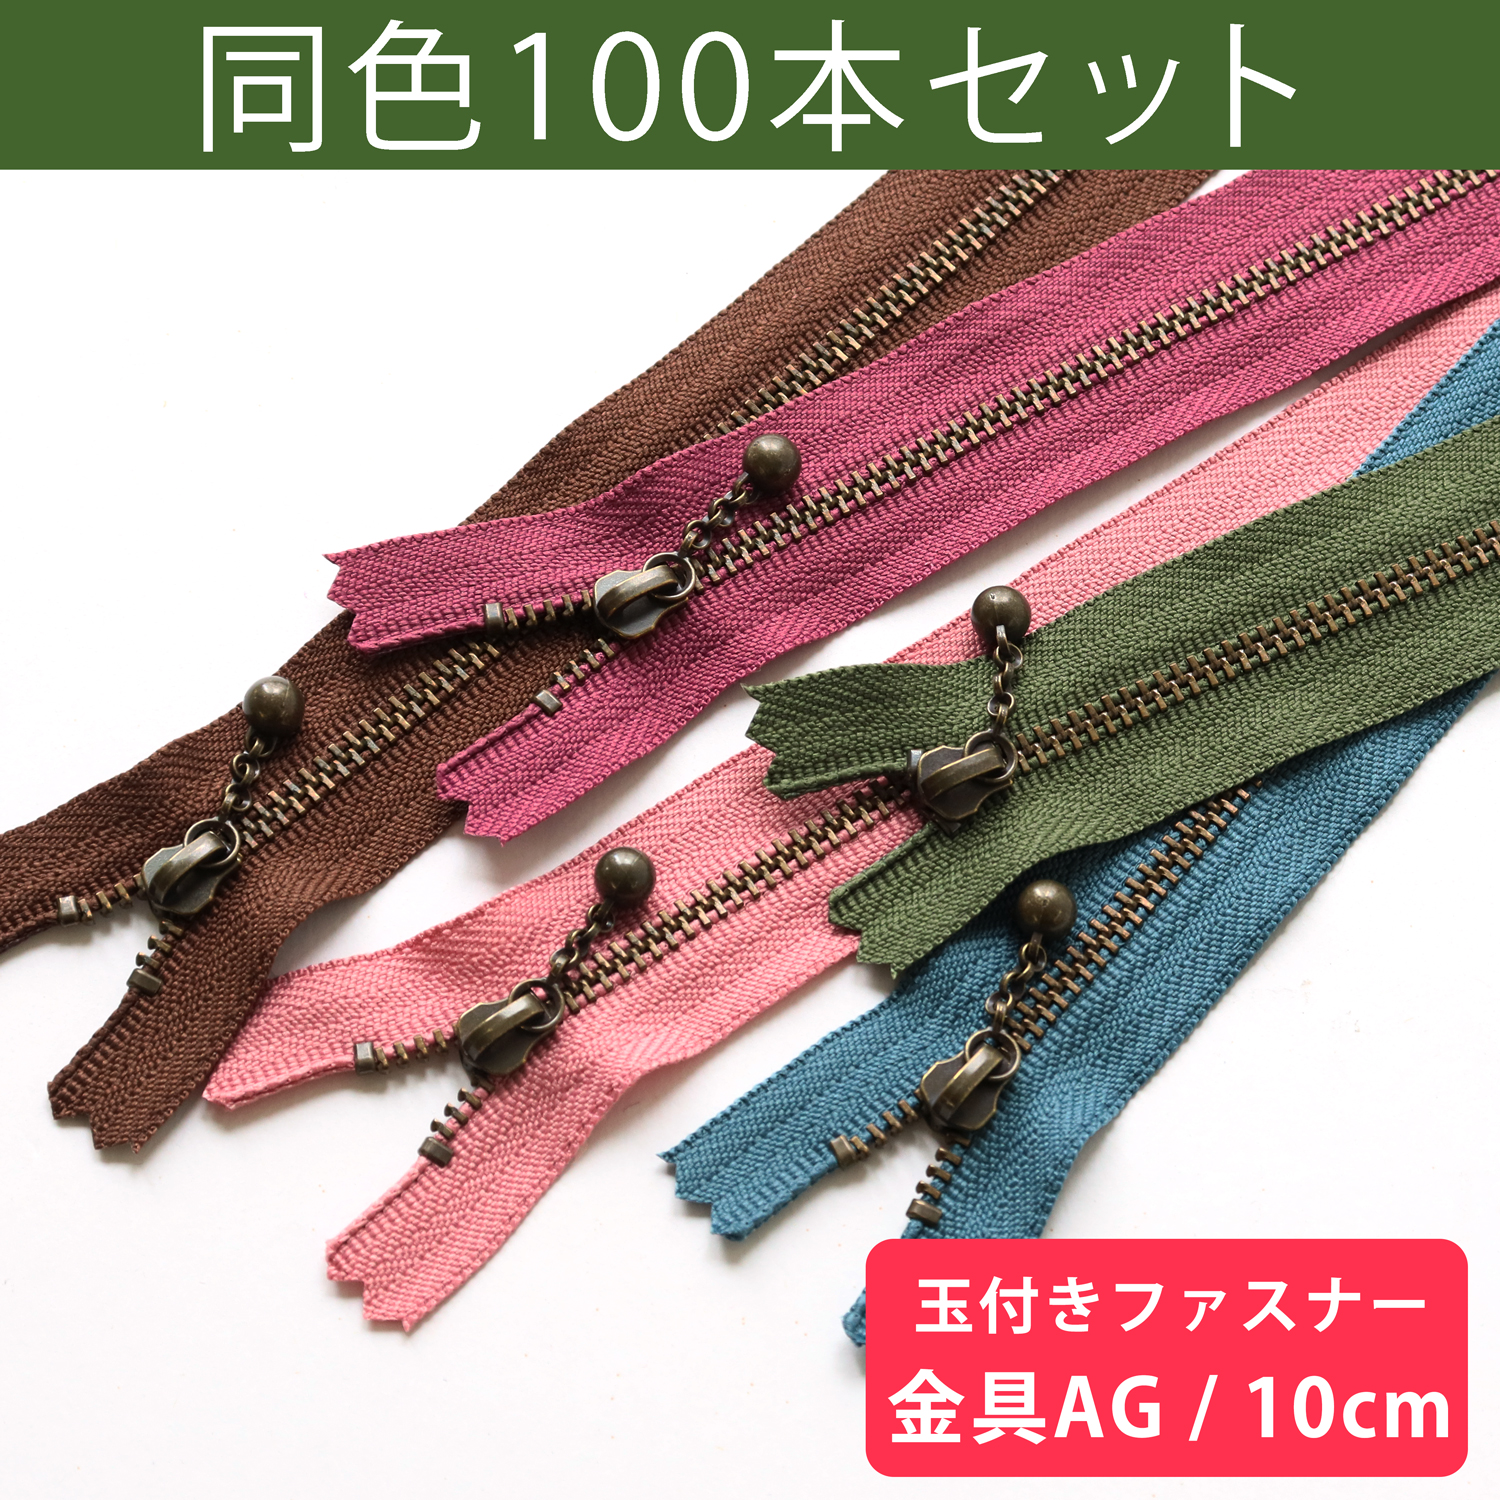 3GKB10-100SET 玉付ファスナー 10cm 100本入 (セット)